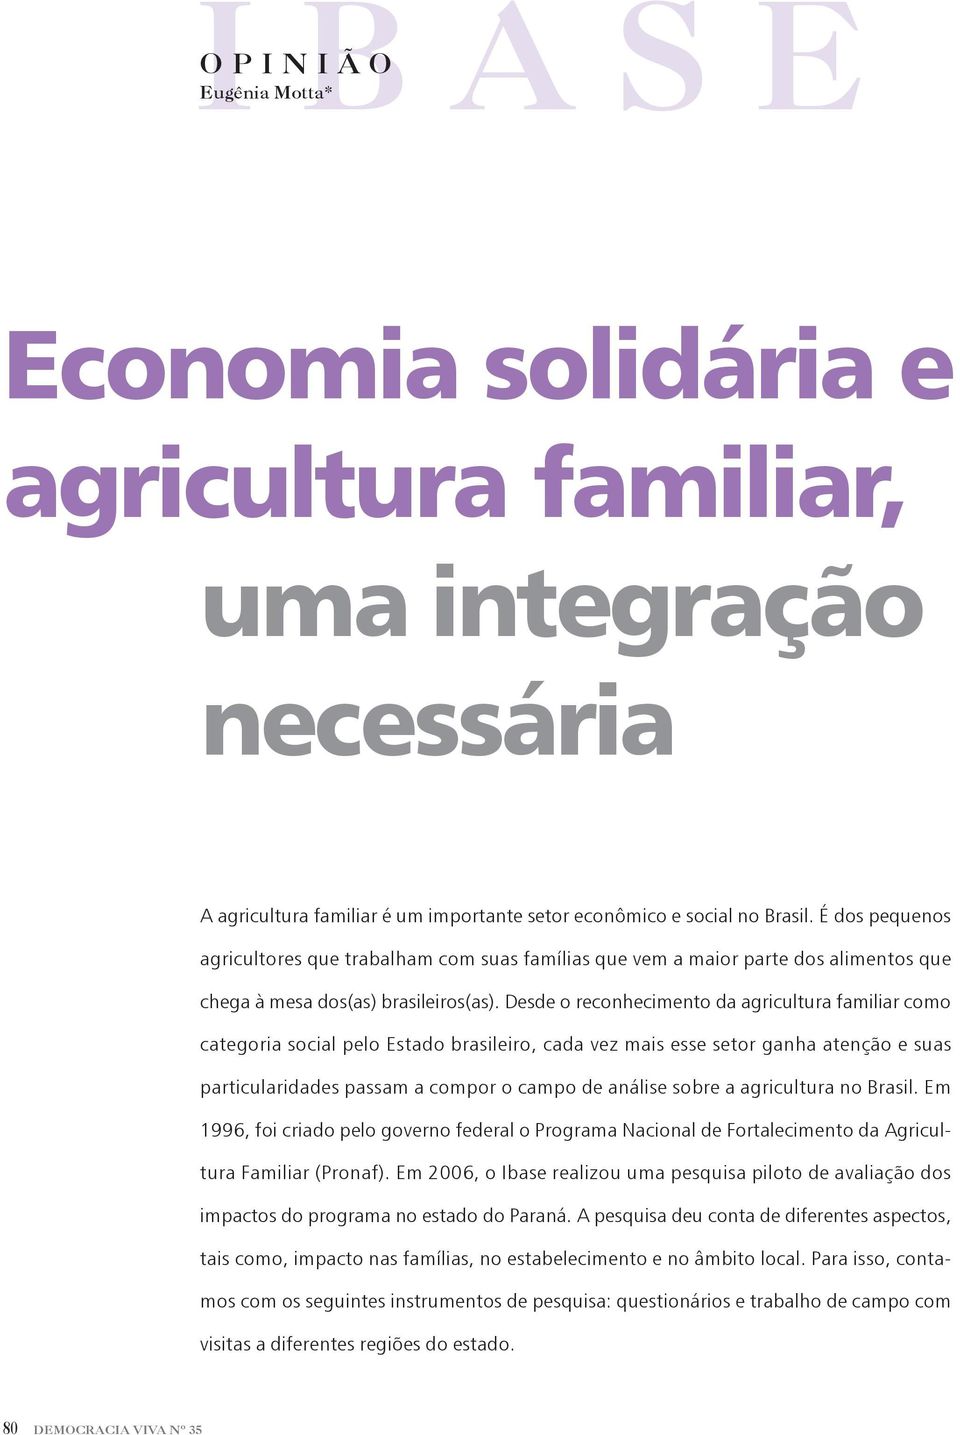 Desde o reconhecimento da agricultura familiar como categoria social pelo Estado brasileiro, cada vez mais esse setor ganha atenção e suas particularidades passam a compor o campo de análise sobre a